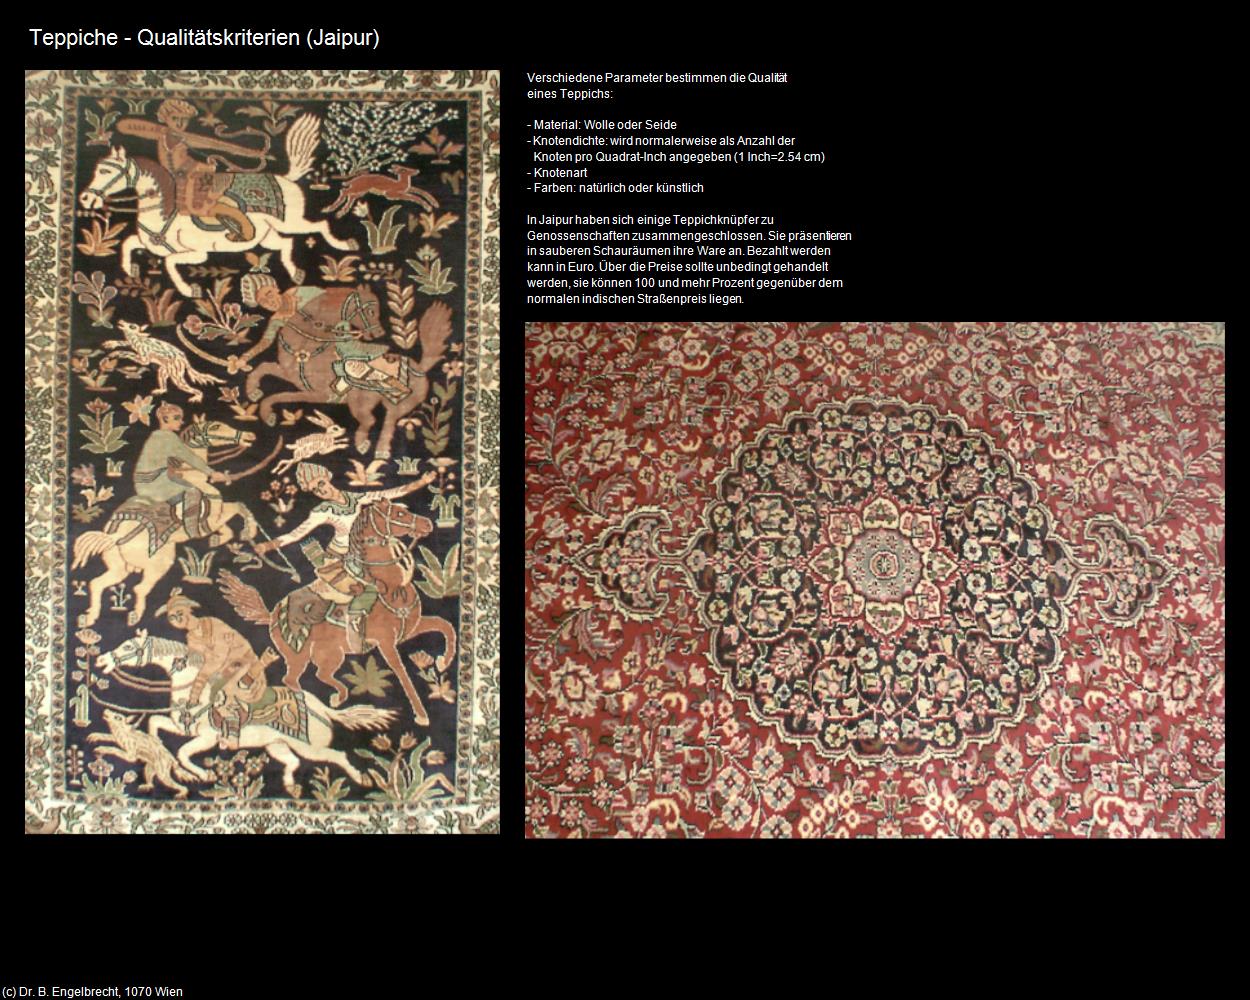 Teppiche - Qualitätskriterien (Jaipur) in Rajasthan - das Land der Könige